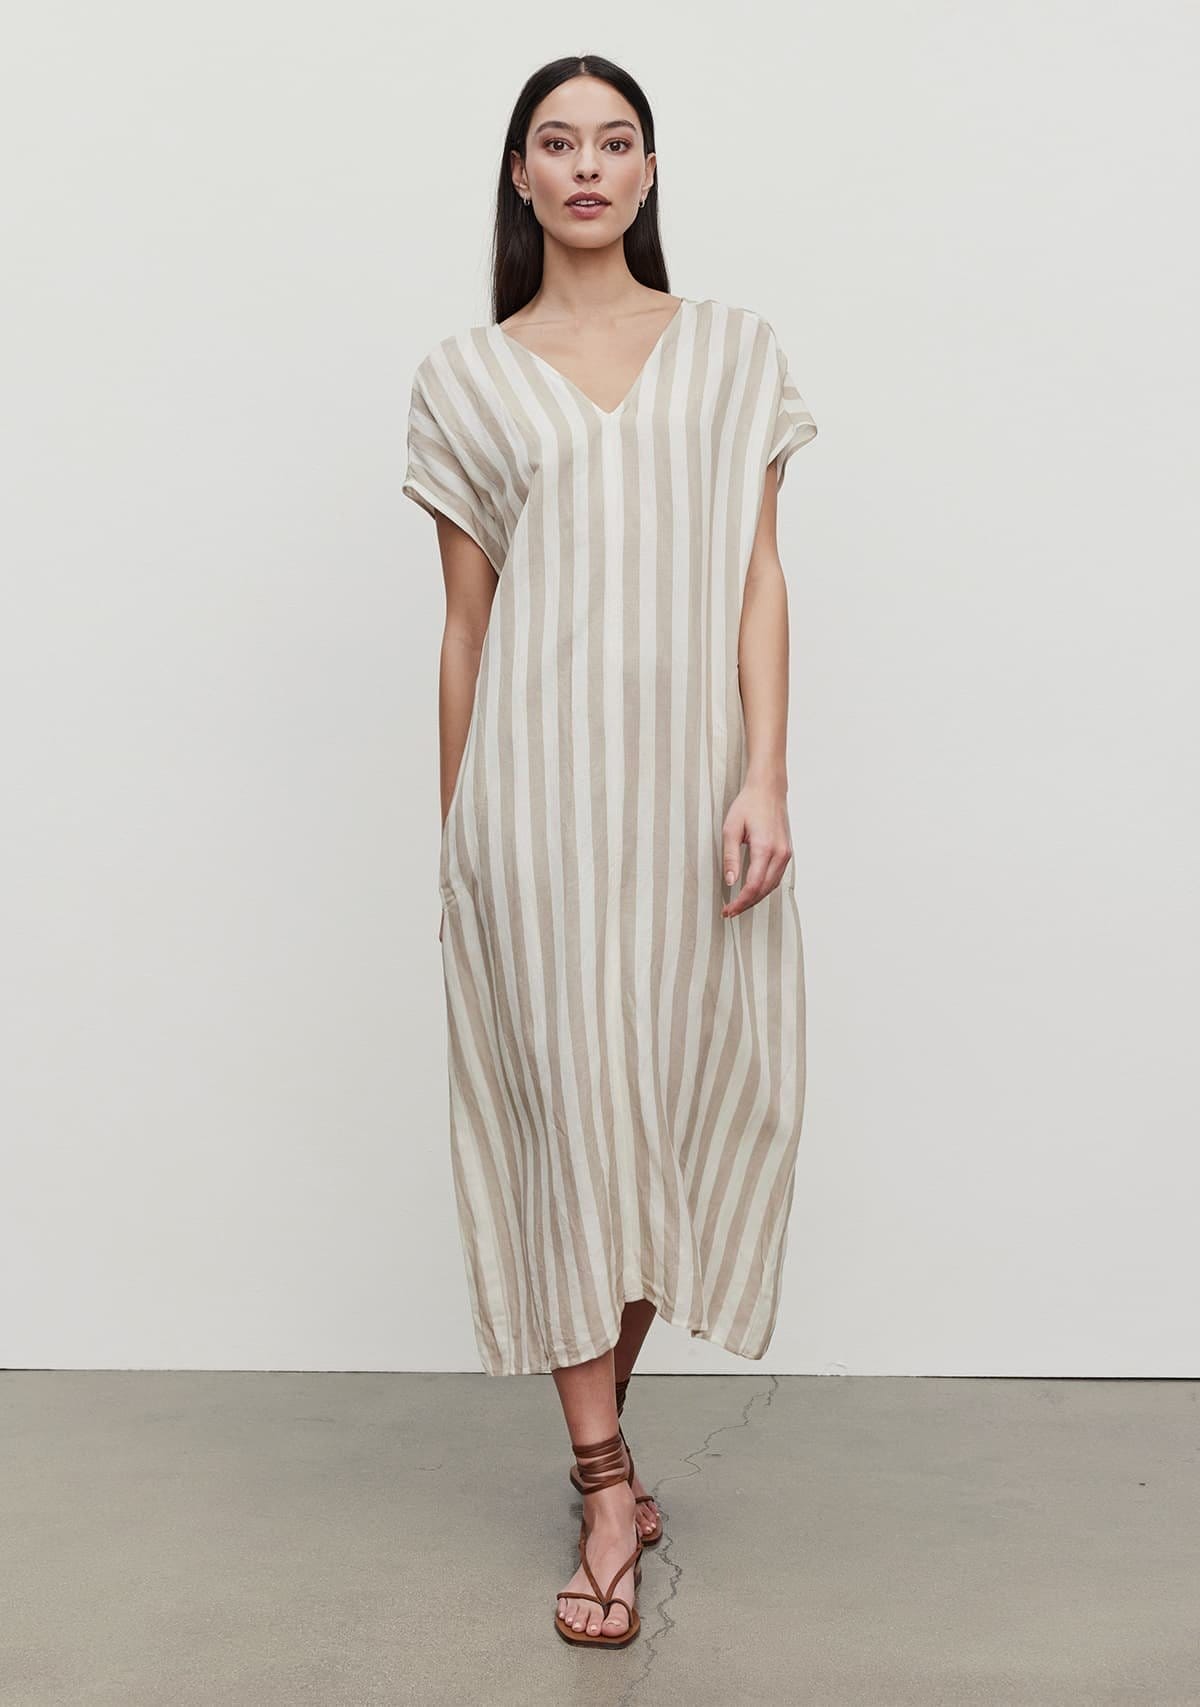 Model wearing the Milla Striped Linen Kaftan Dress